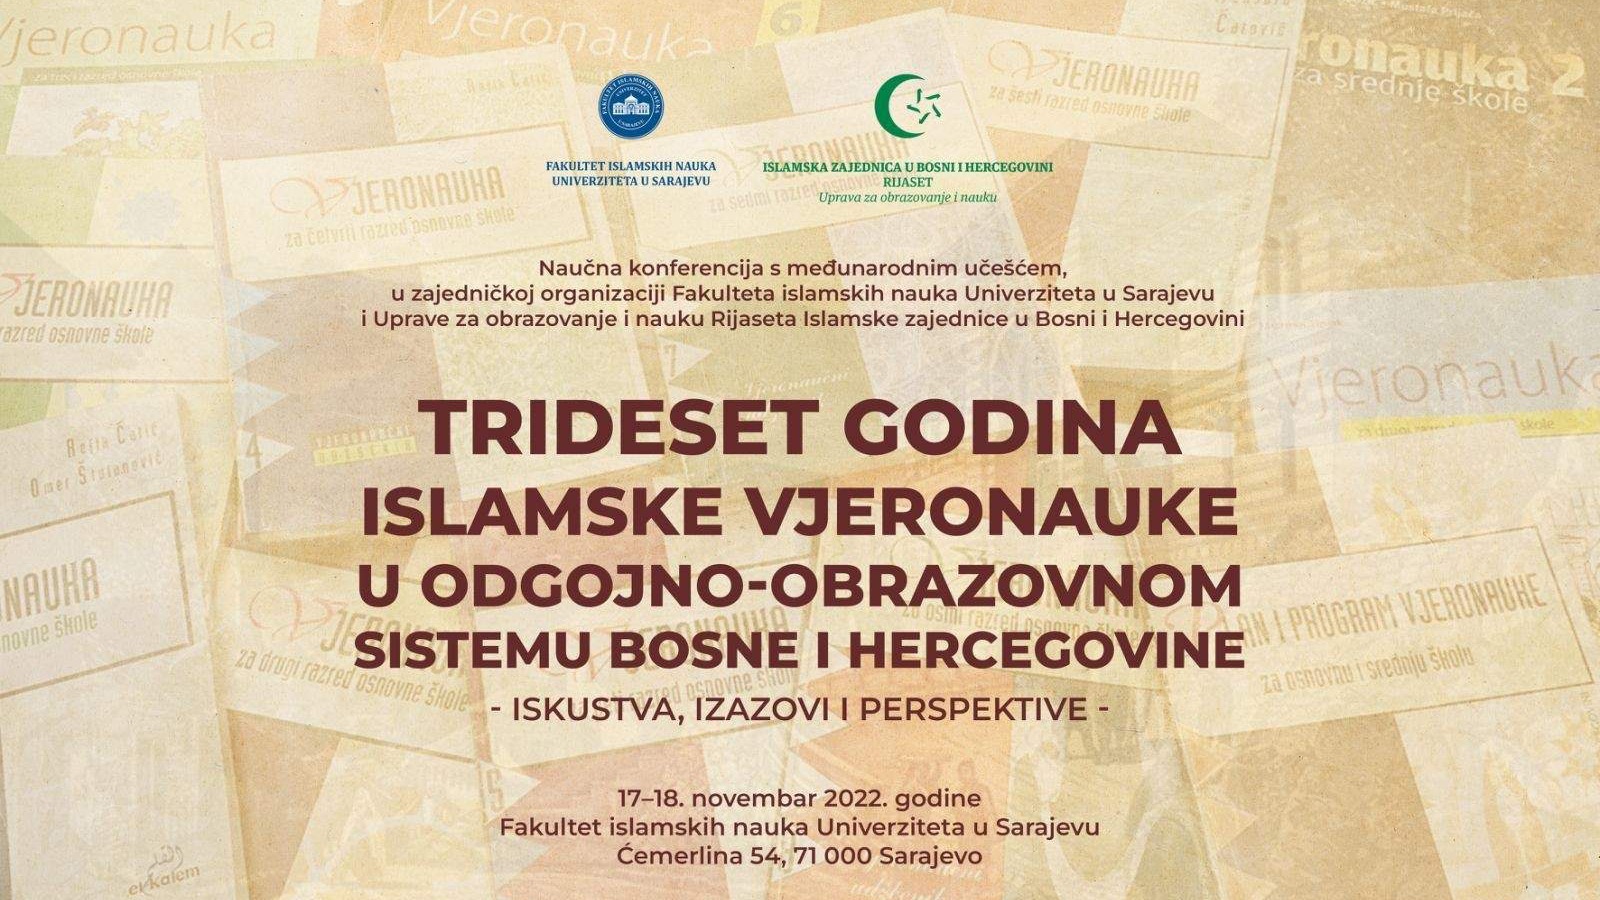 Konferencija "Trideset godina Islamske vjeronauke u odgojno-obrazovnom sistemu BiH: iskustva, izazovi i perspektive" 17. i 18. novembra